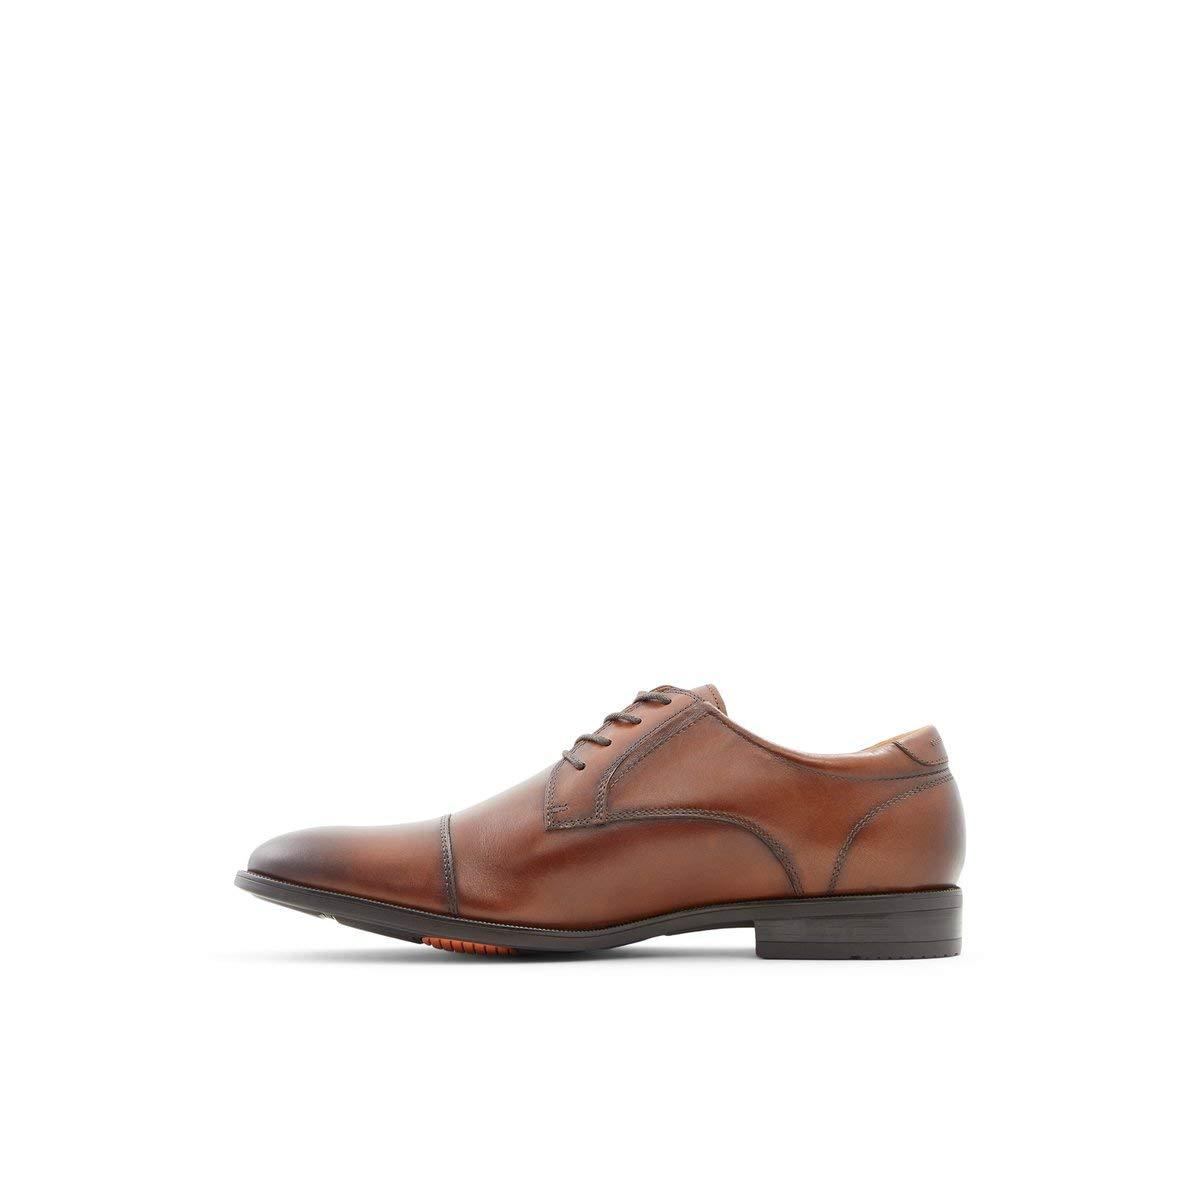 CORTLEYFLEX Oxford Cuir ALDO pour homme en coloris Marron 69 % de réduction Homme Chaussures Chaussures  à lacets Chaussures Oxford 